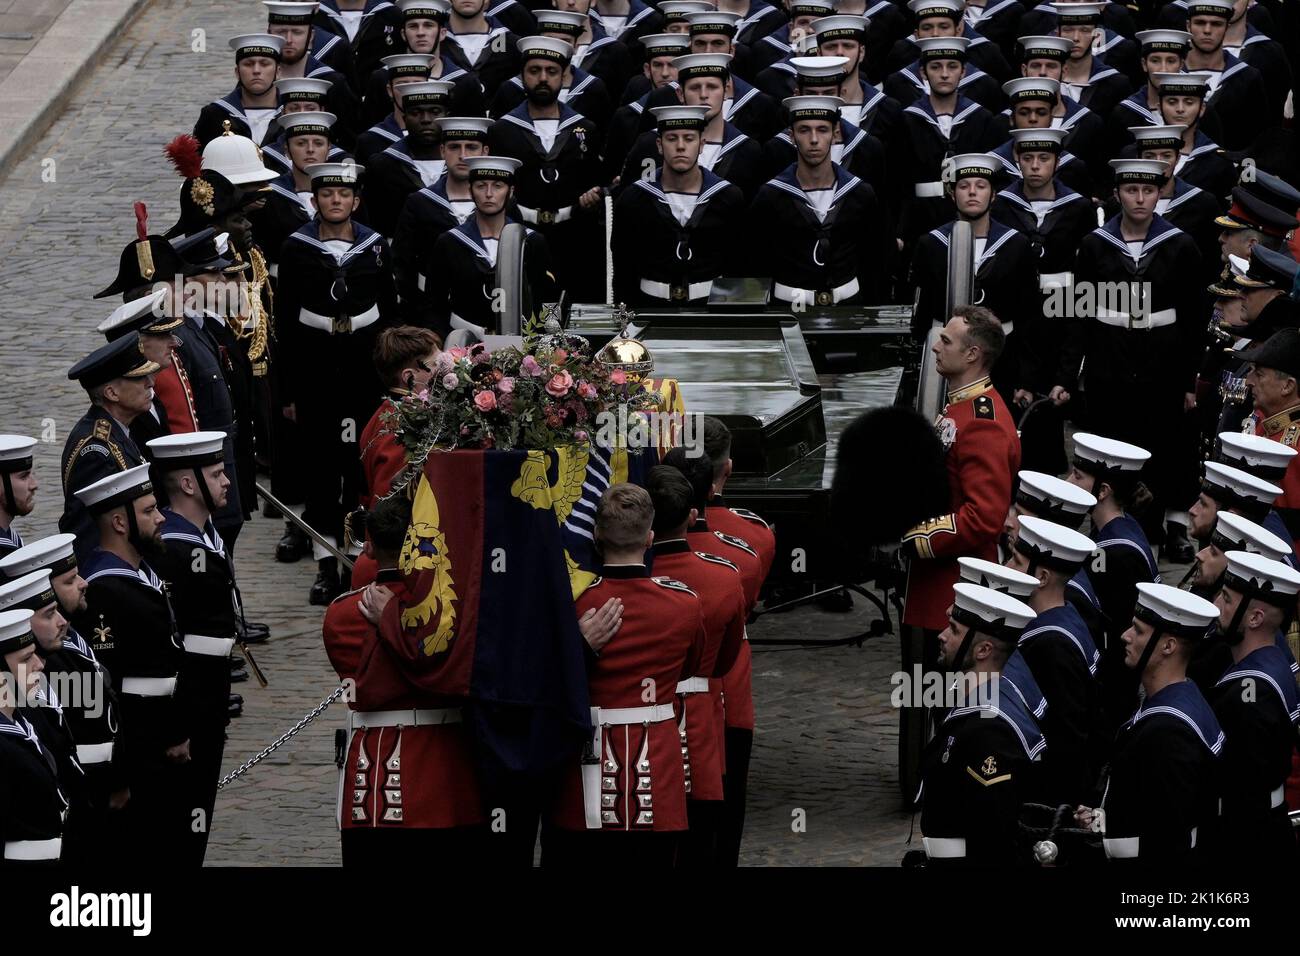 Der Sarg von Königin Elizabeth II verlässt die Westminster Hall vor dem State Funeral, das in der Westminster Abbey, London, stattfindet. Bilddatum: Montag, 19. September 2022. Stockfoto